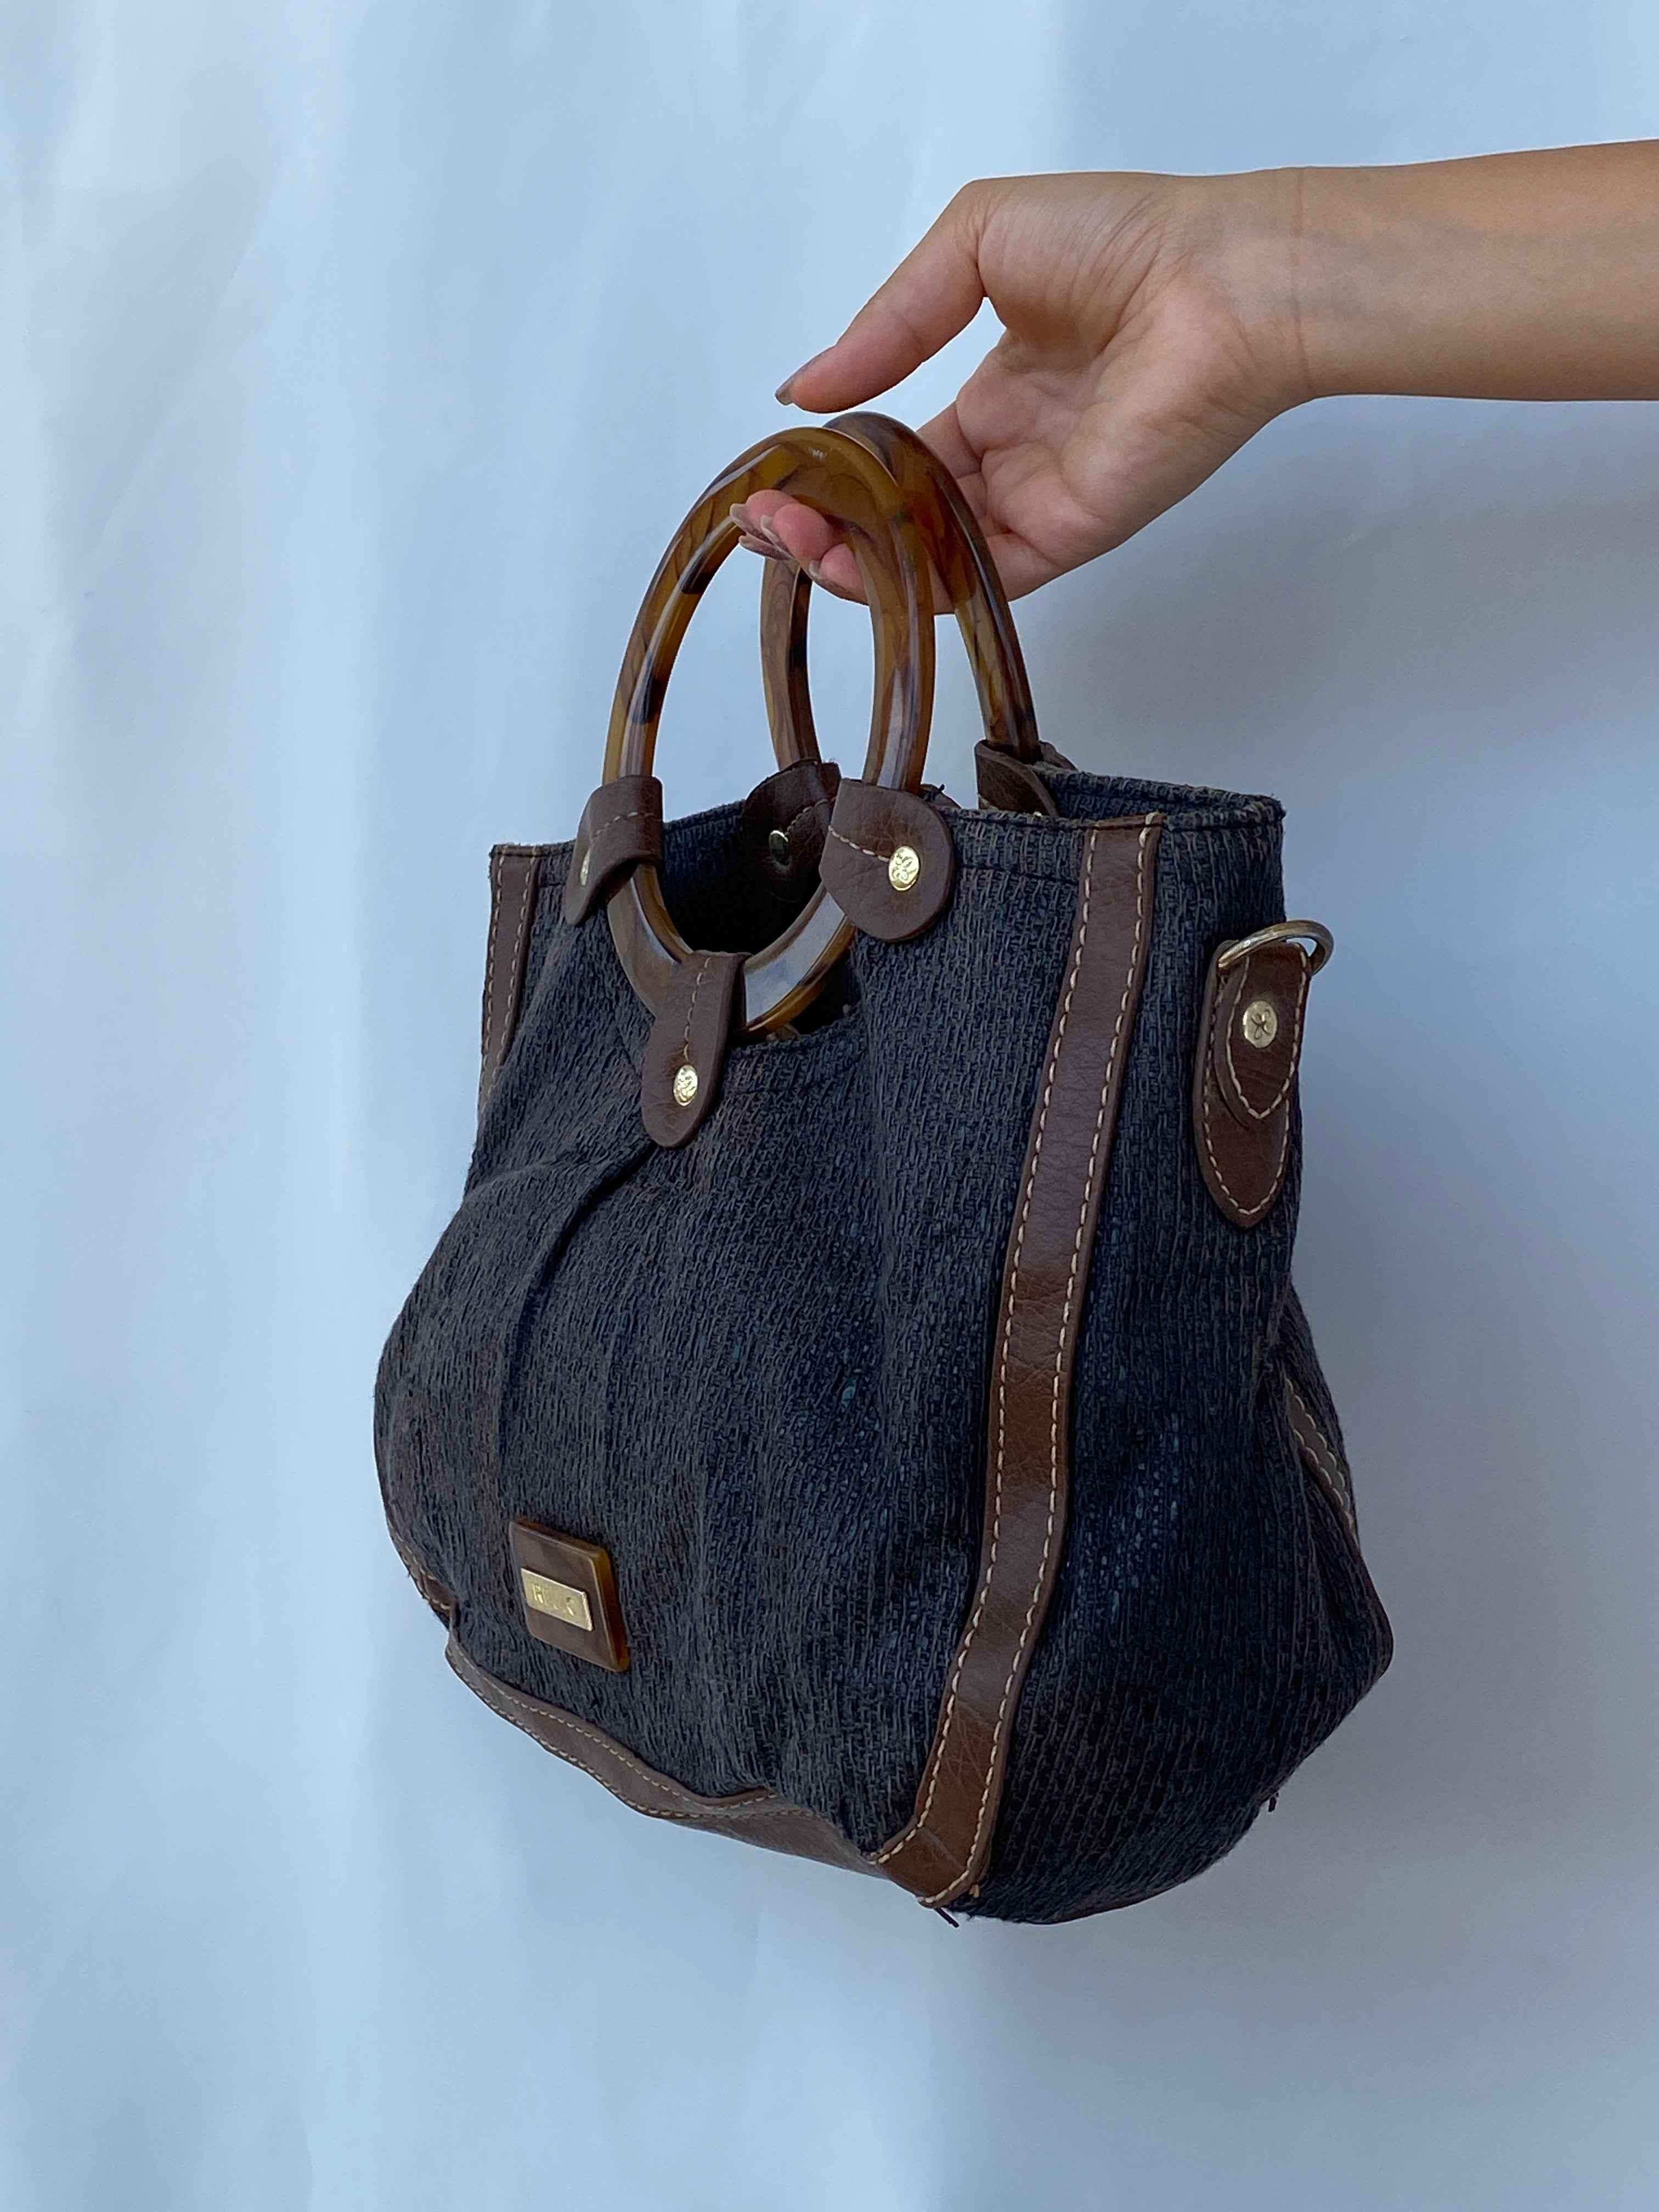 Beautiful Y2K Relic Wooden Handle Handbag - Balagan Vintage Handbags 00s, 90s, handbag, NEW IN